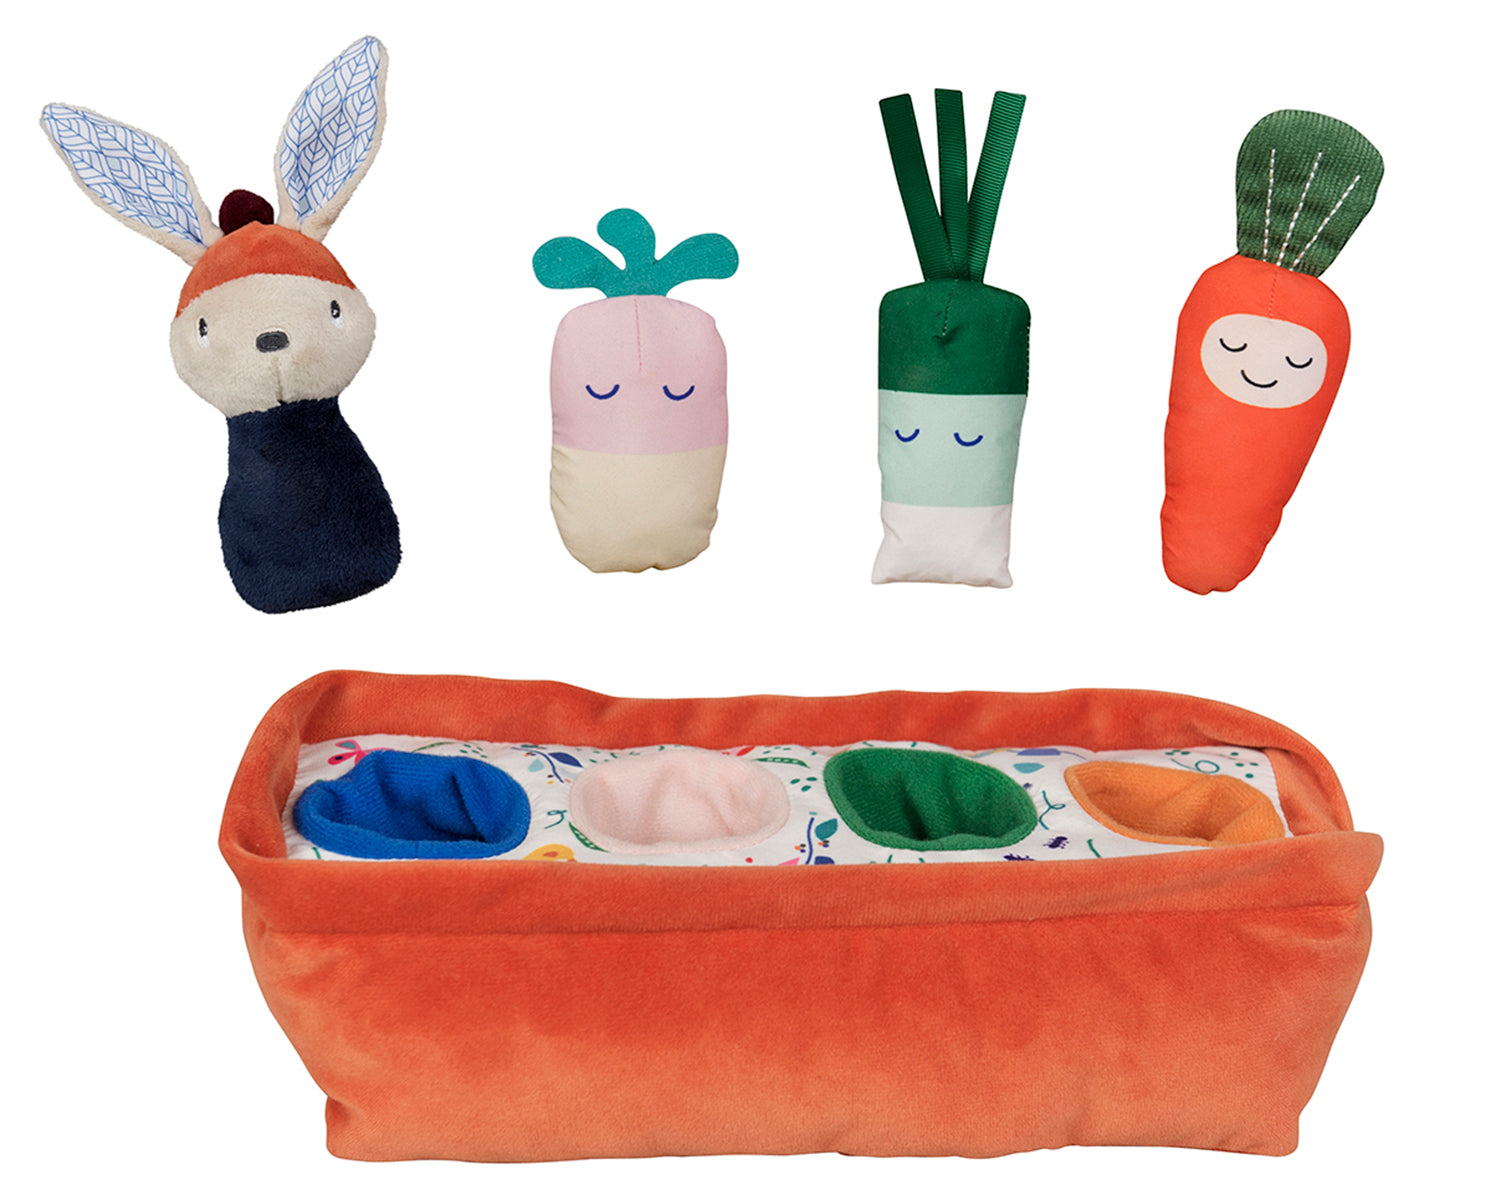 Jardinière en peluche orange et 4 emplacements dédiés au rangement de Gabin le lapin (figurine en peluche) et les légumes en tissus dont les formes, les matières, les couleurs et les sons varient. 